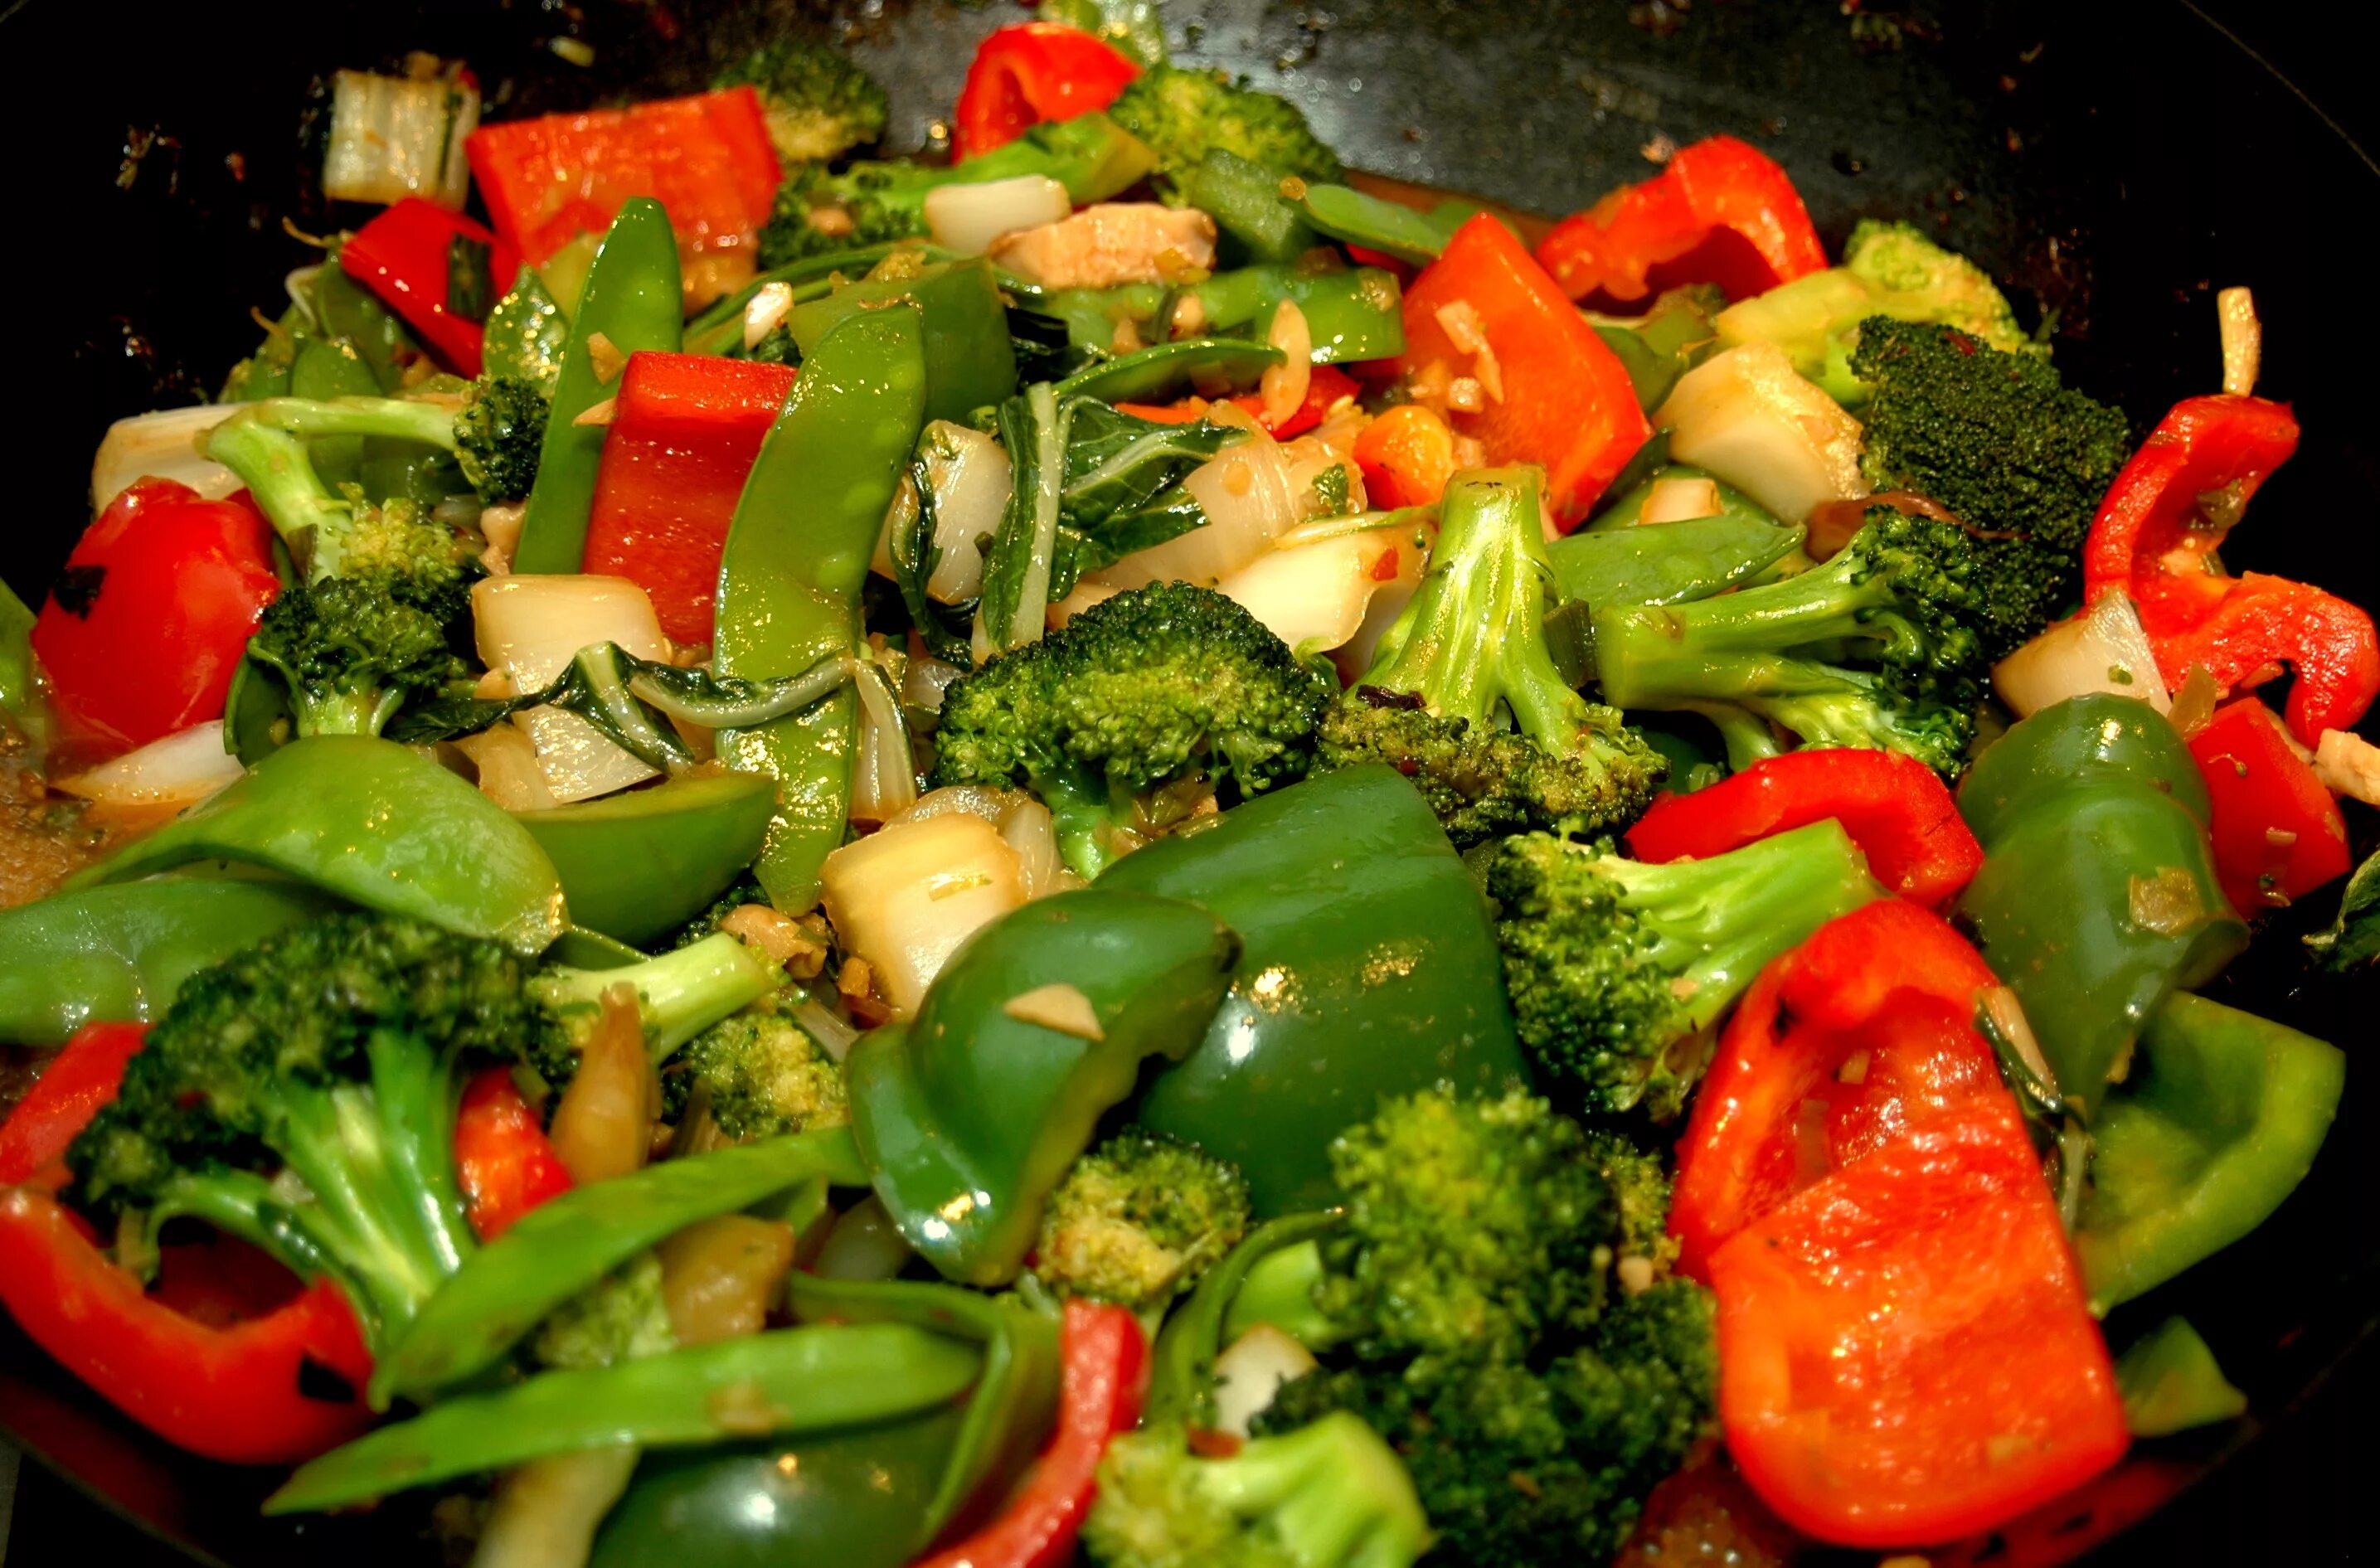 Fry vegetables. Стир Фрай. Стир-Фрай из овощей. Stir Fried Vegetables. Vegetable Stir Fry.